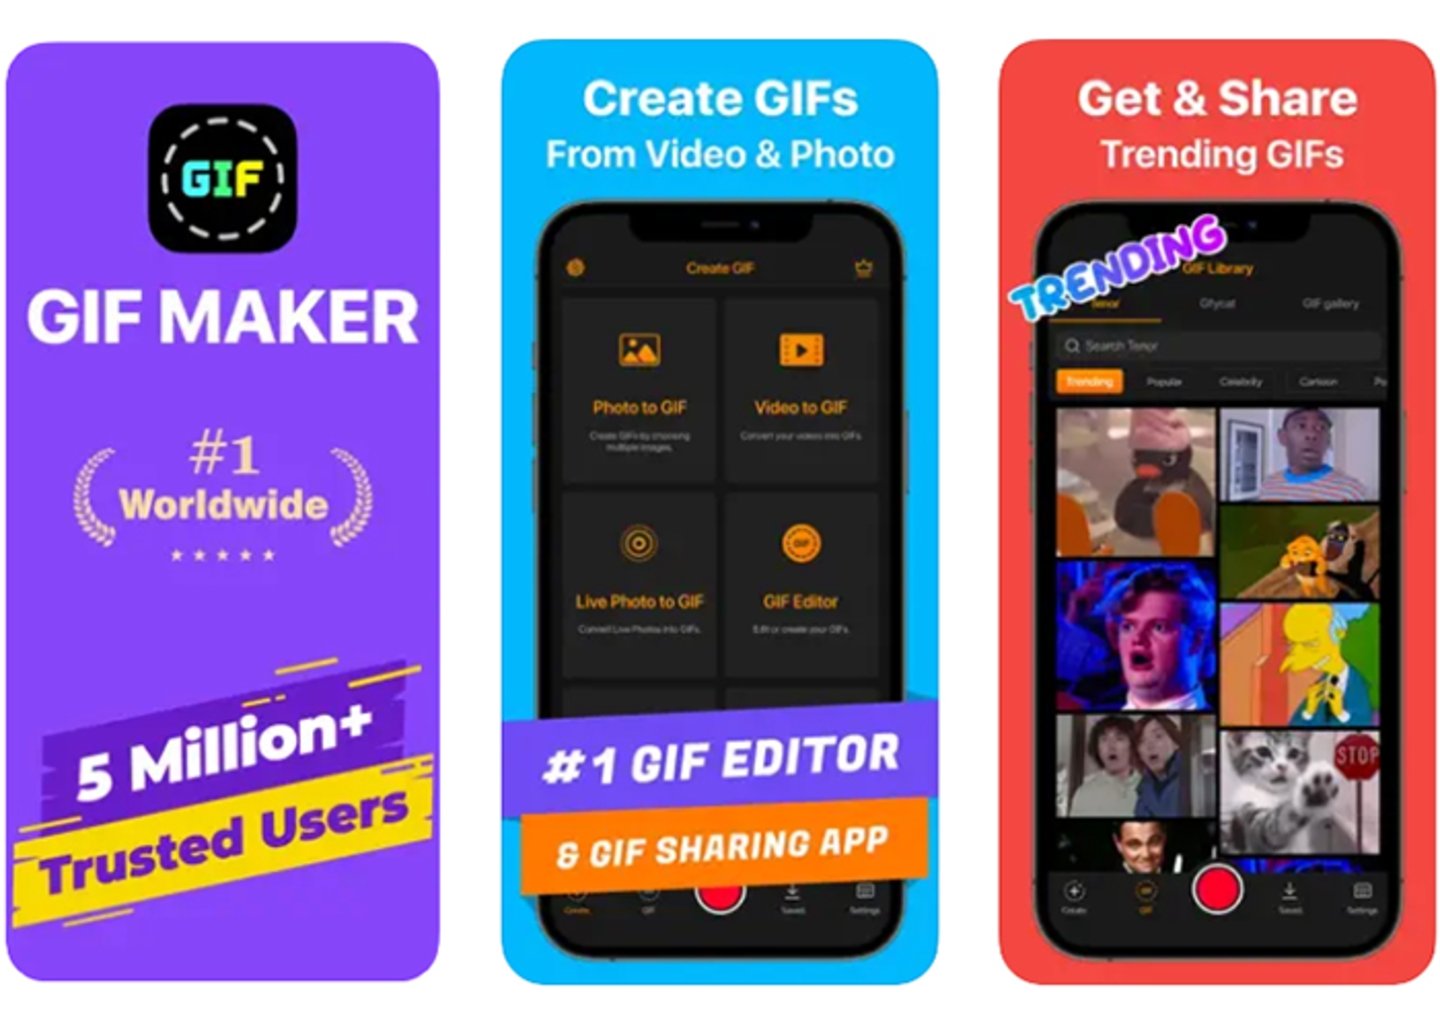 Transforma videos en GIFs divertidos en segundos con GIF Maker - Make Video to GIFs